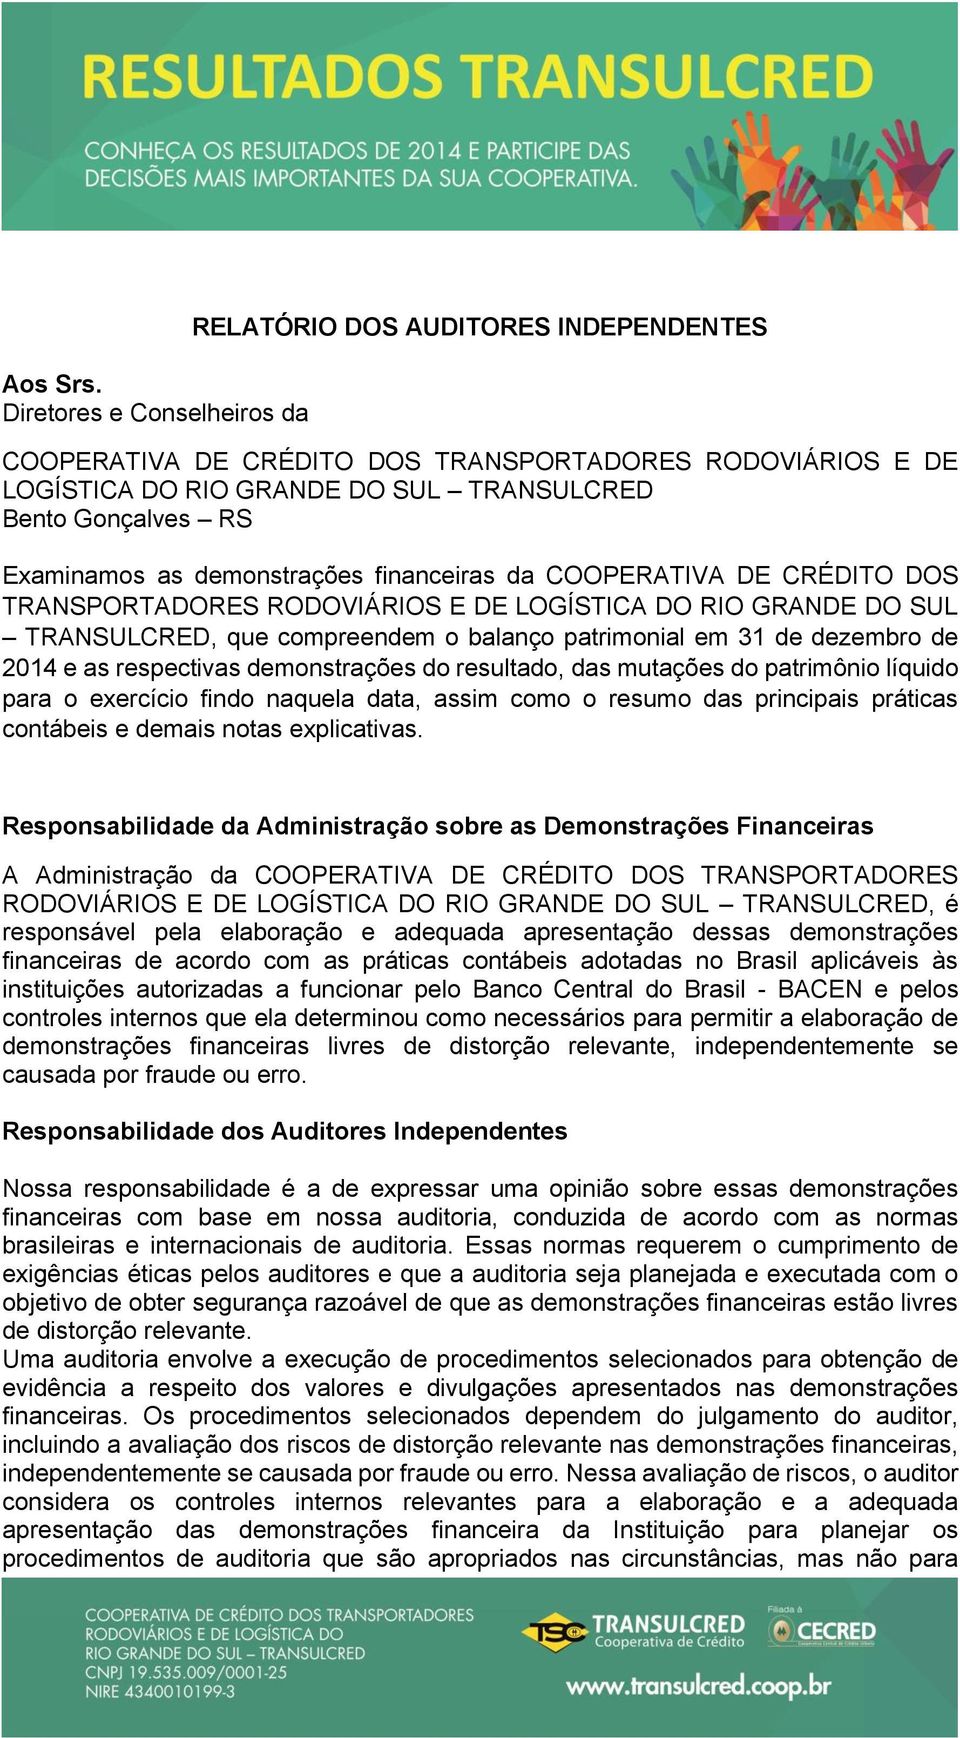 as demonstrações financeiras da COOPERATIVA DE CRÉDITO DOS TRANSPORTADORES RODOVIÁRIOS E DE LOGÍSTICA DO RIO GRANDE DO SUL TRANSULCRED, que compreendem o balanço patrimonial em 31 de dezembro de 2014